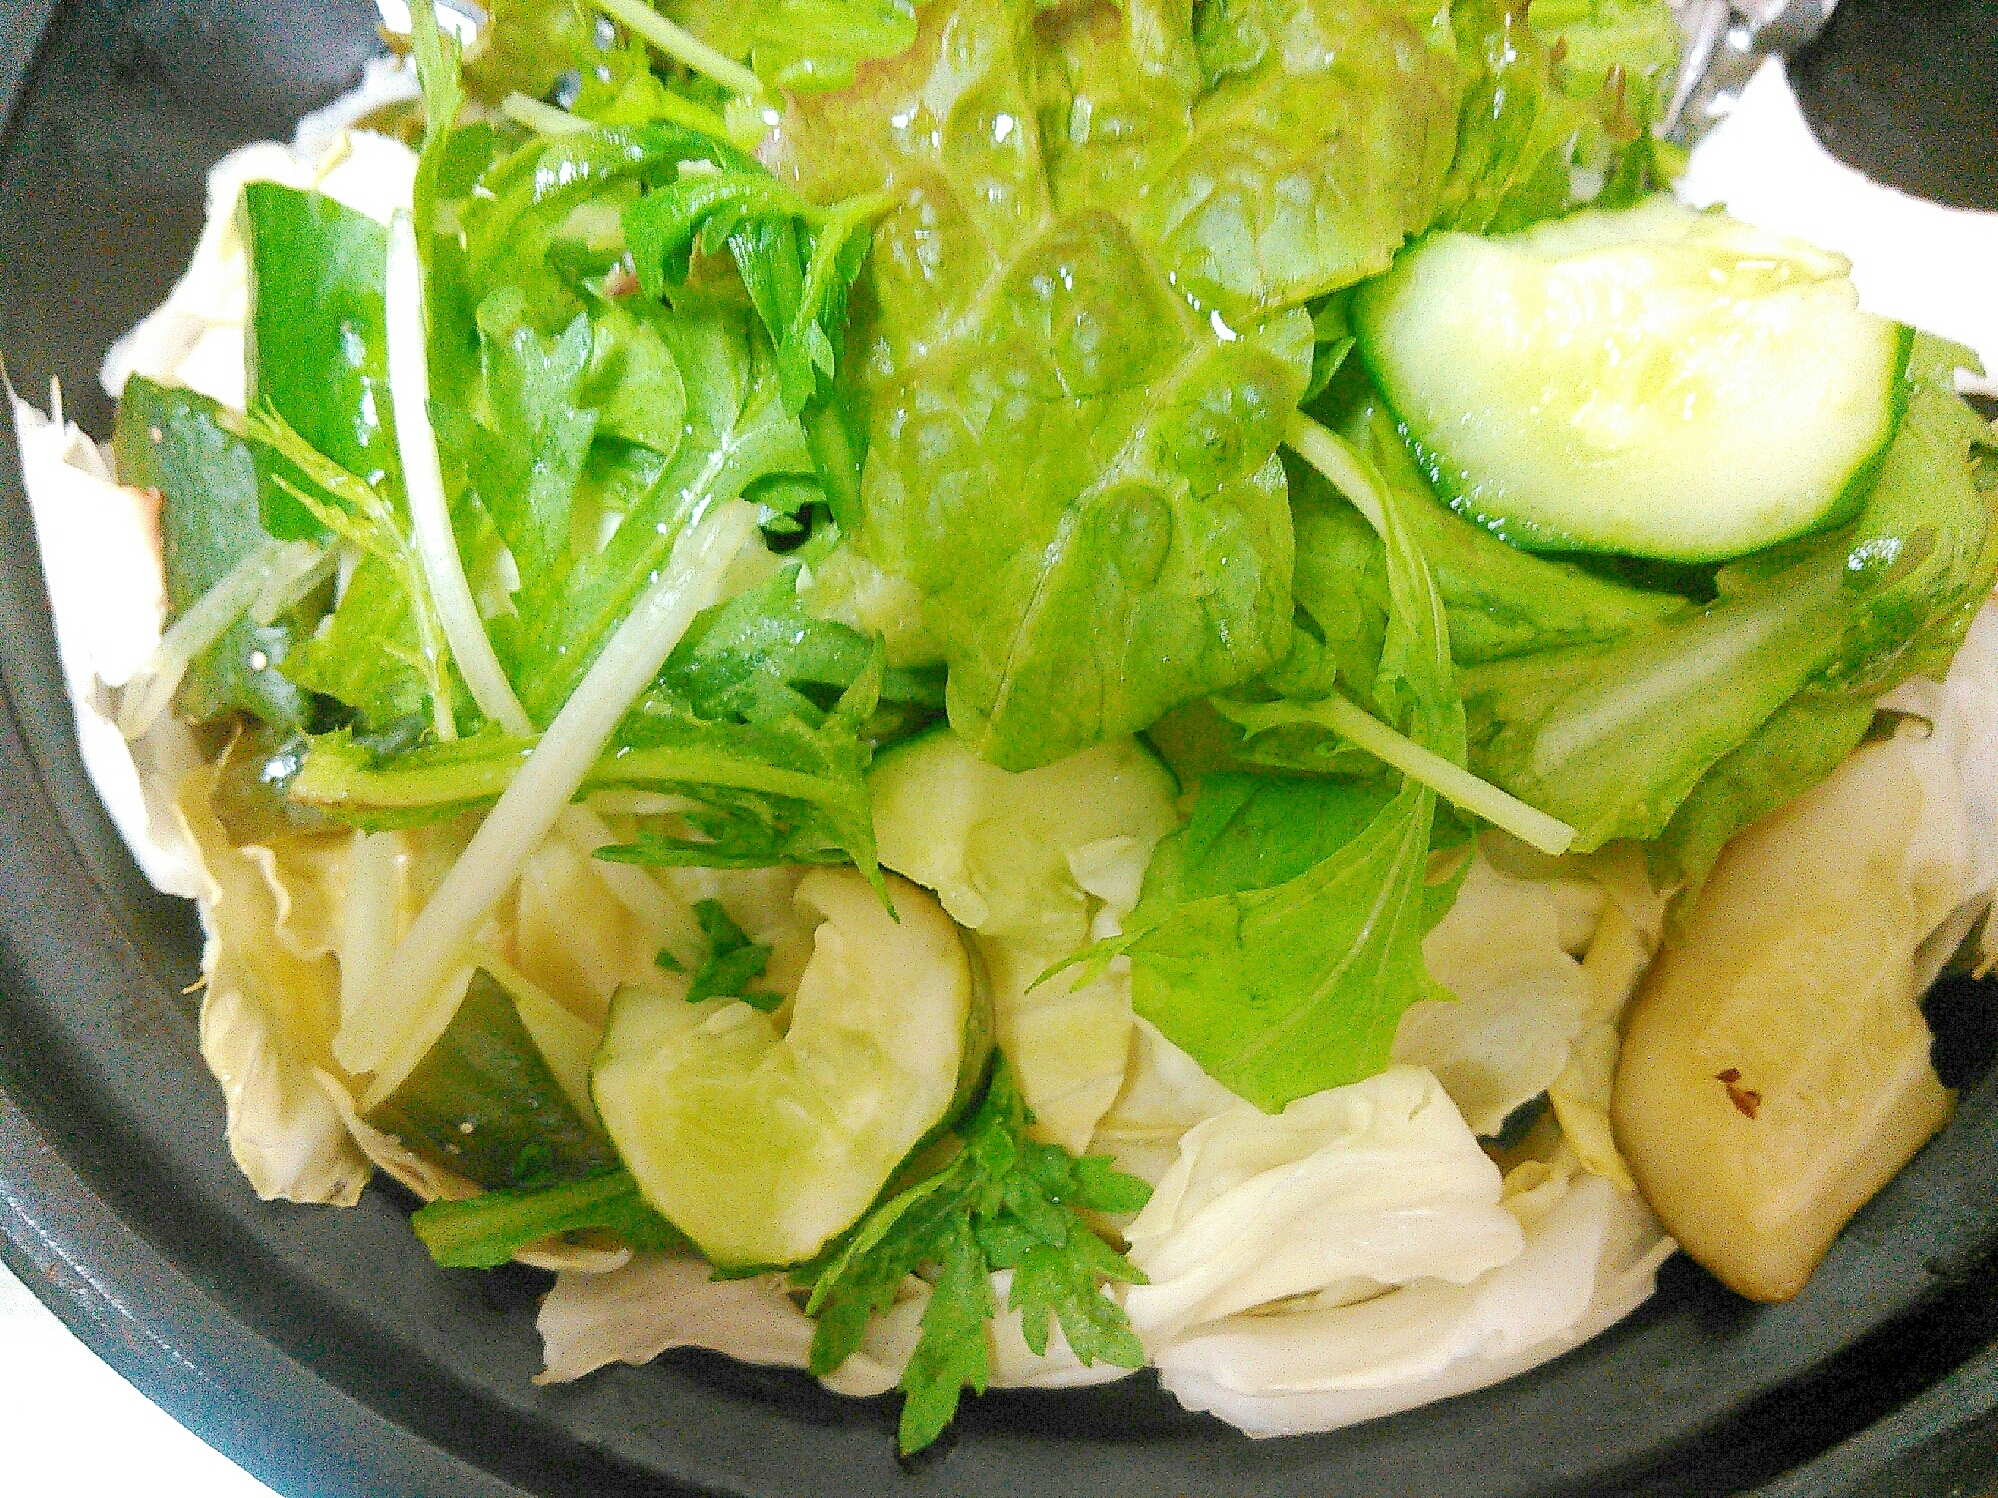 キャベツ キュウリ レタス水菜のグリーンサラダ お手軽レシピで作る Jaグループ